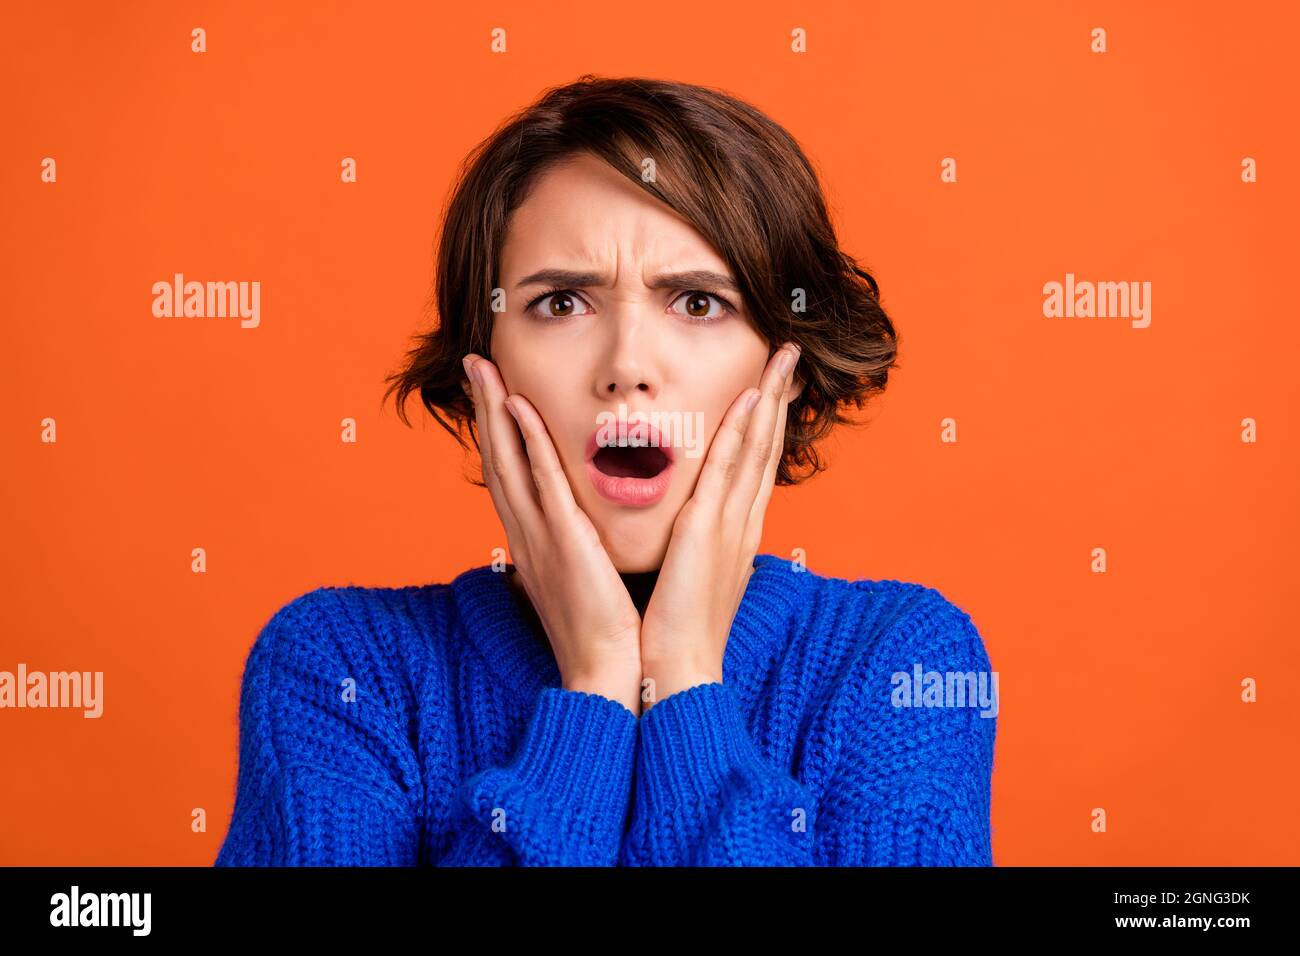 Ritratto di attraente preoccupato ragazza depressa negativo negativo improvvisa reazione notizie isolato su sfondo di colore arancione vibrante Foto Stock